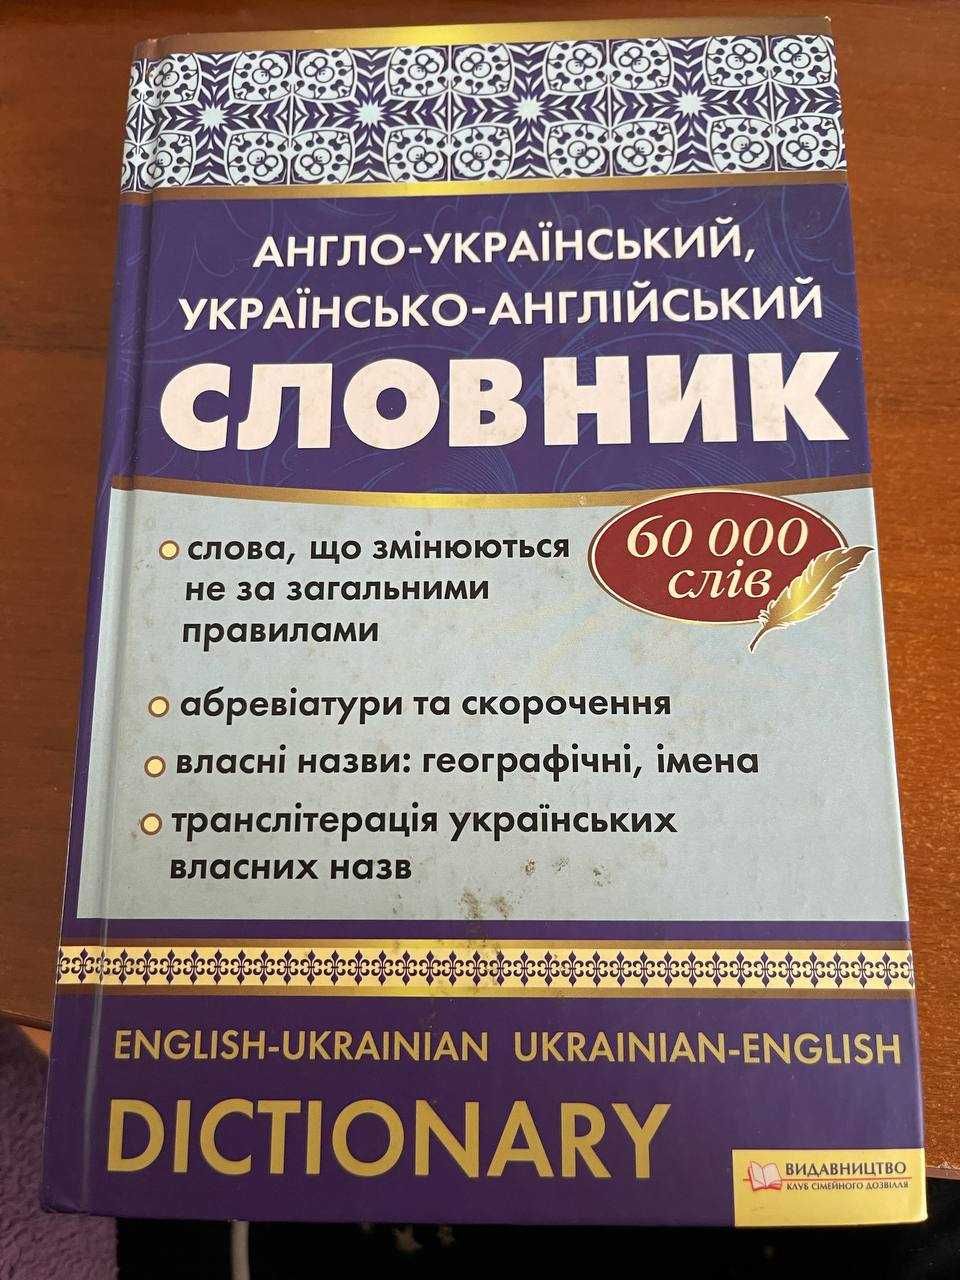 "Англо-український, українсько-англійський словник. 60 000 слів"